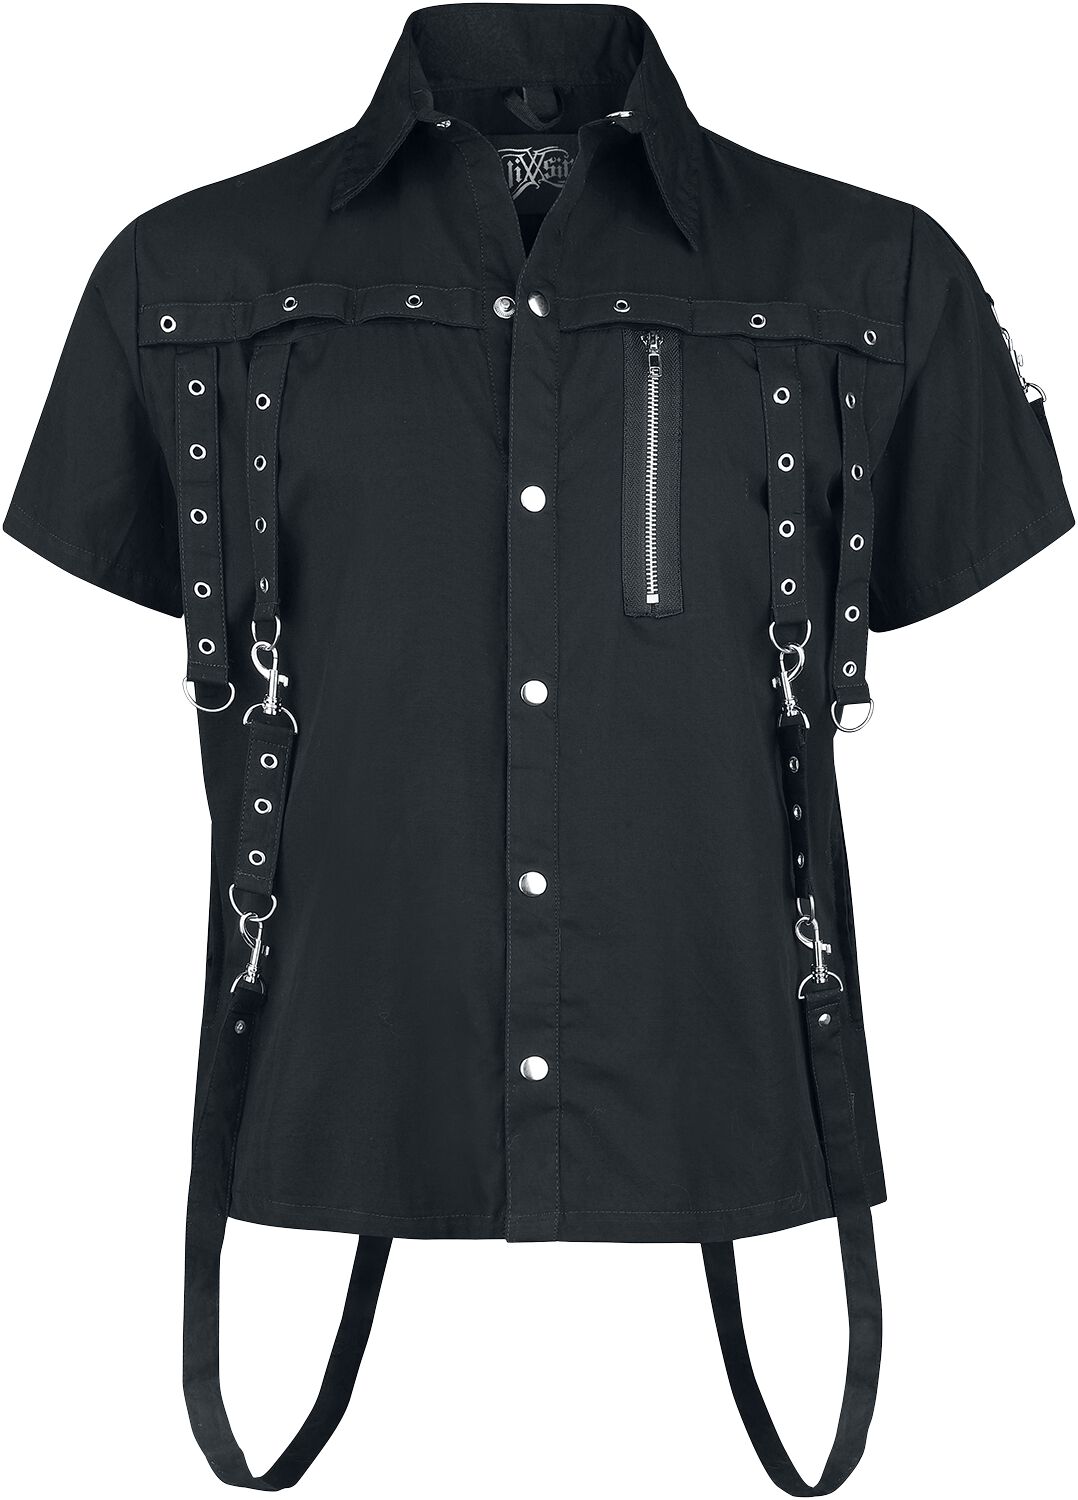 Vixxsin - Gothic Kurzarmhemd - Cassius Shirt - S bis 4XL - für Männer - Größe XXL - schwarz